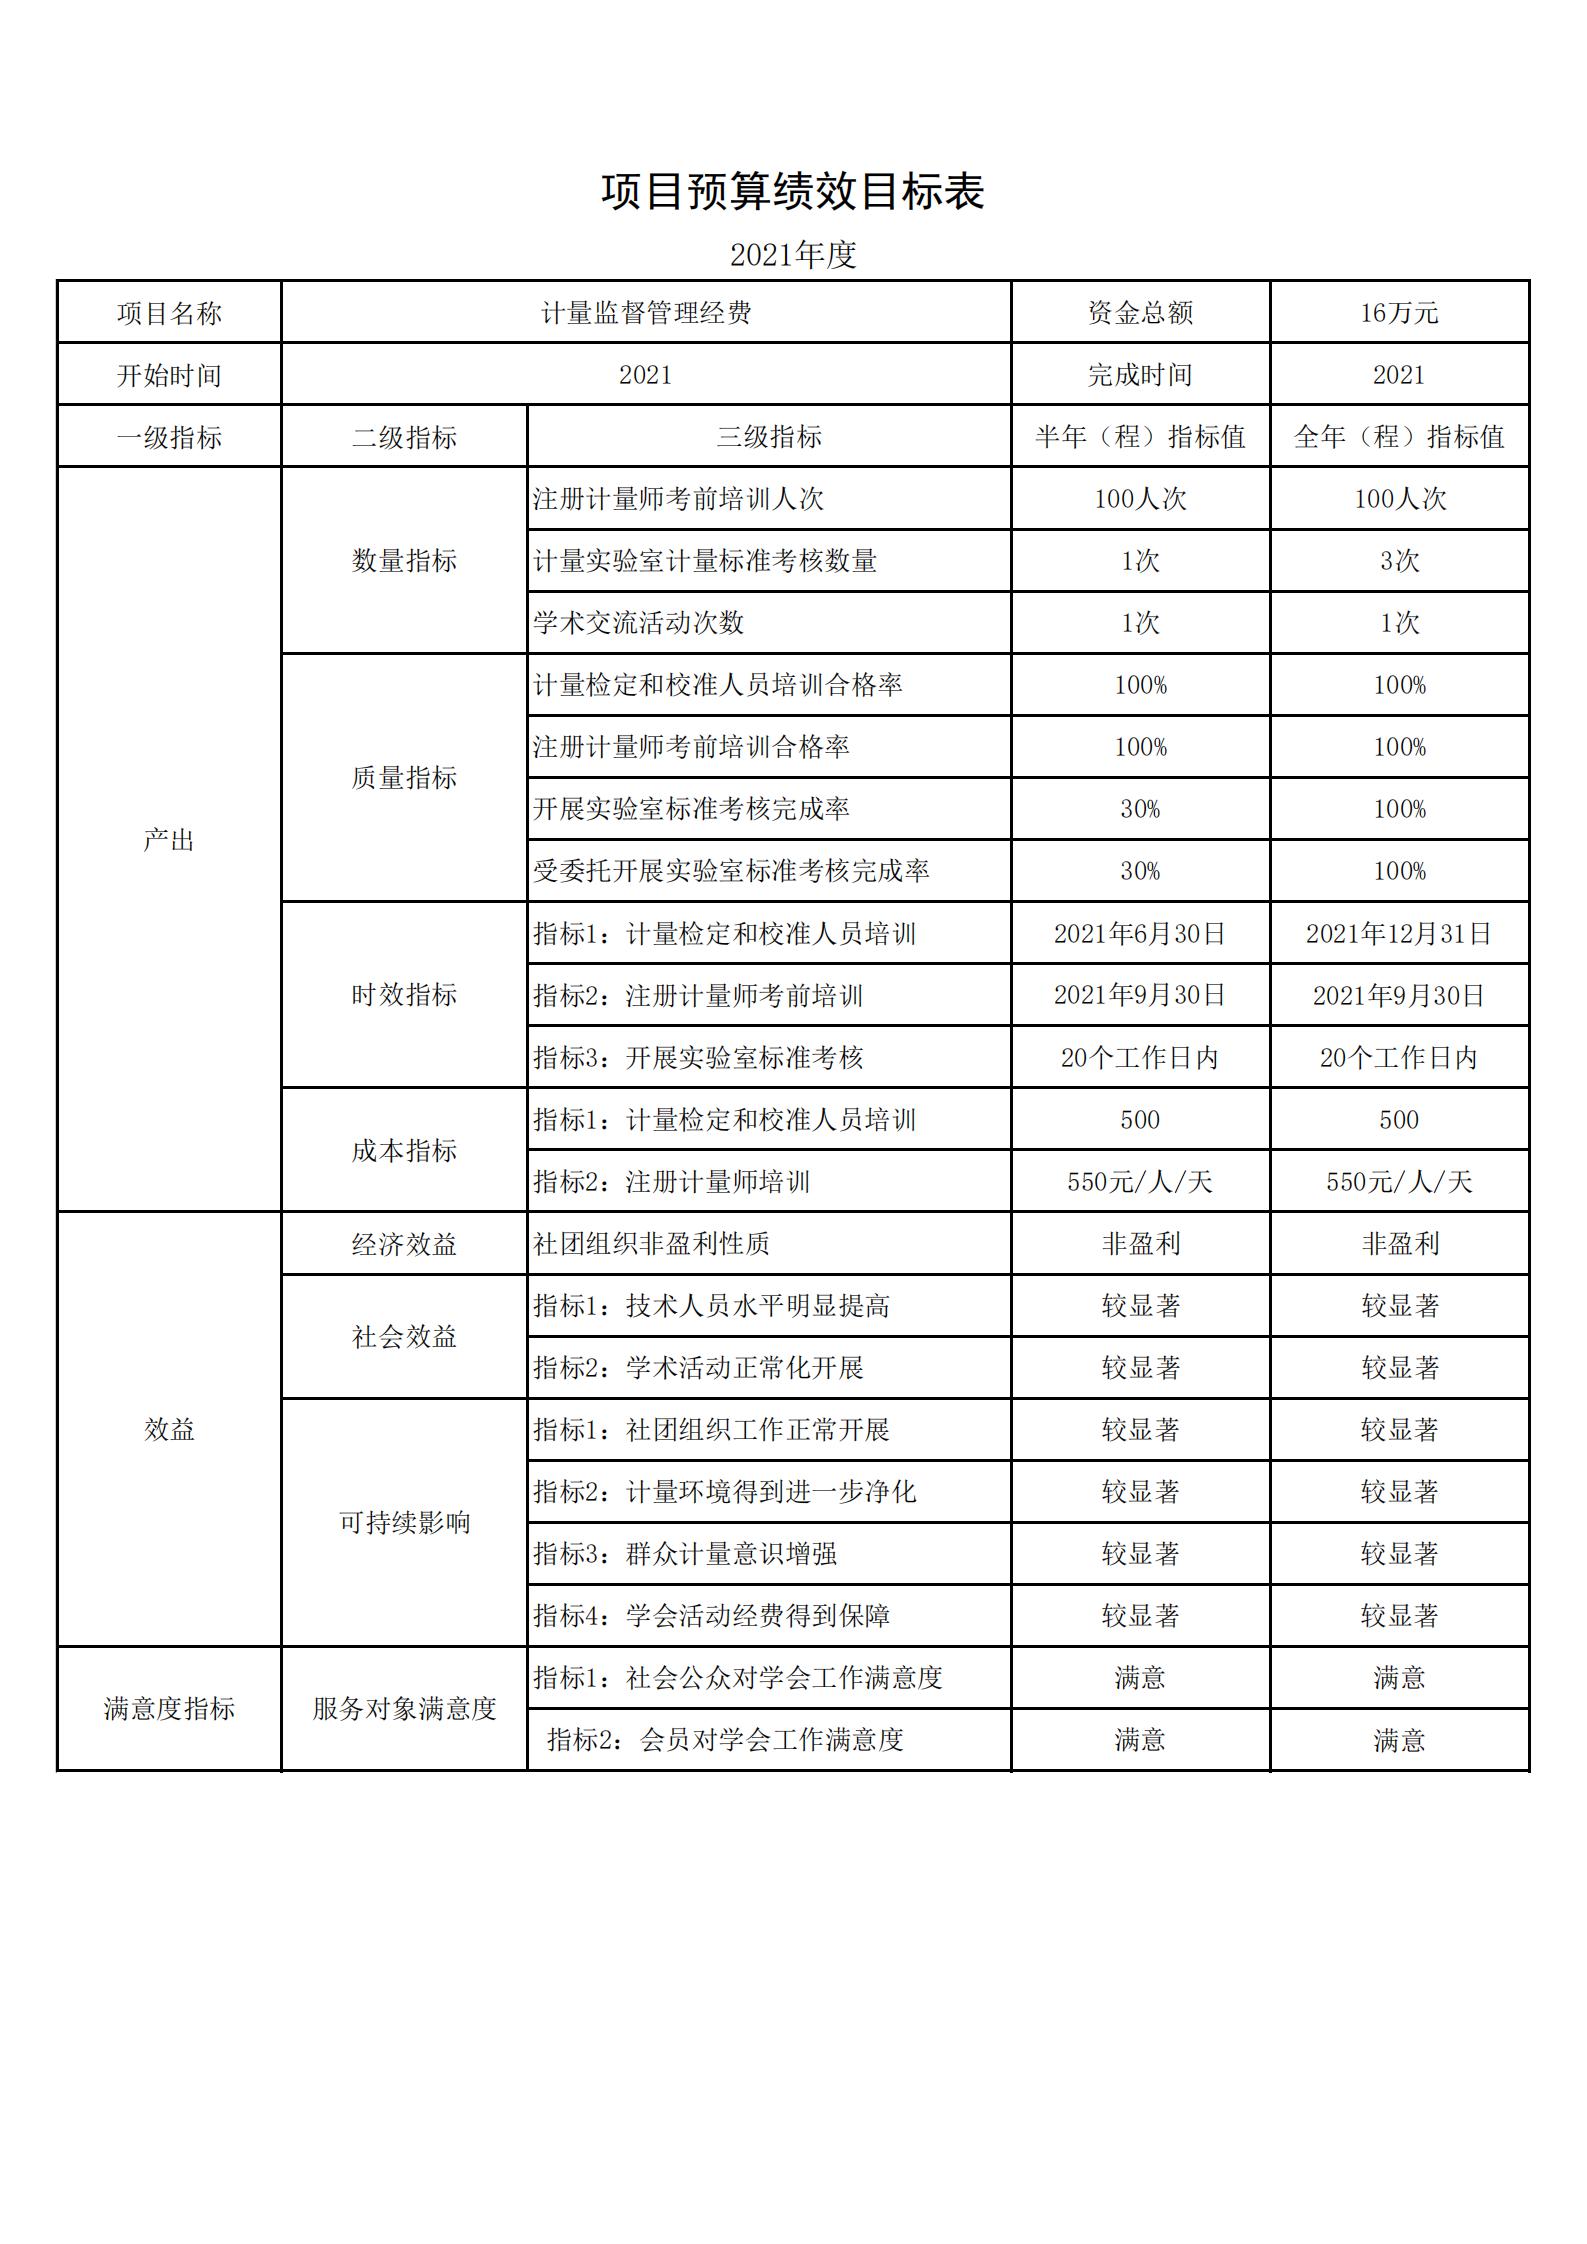 165016江苏省计量测试学会项目绩效目标(1)_00.jpg